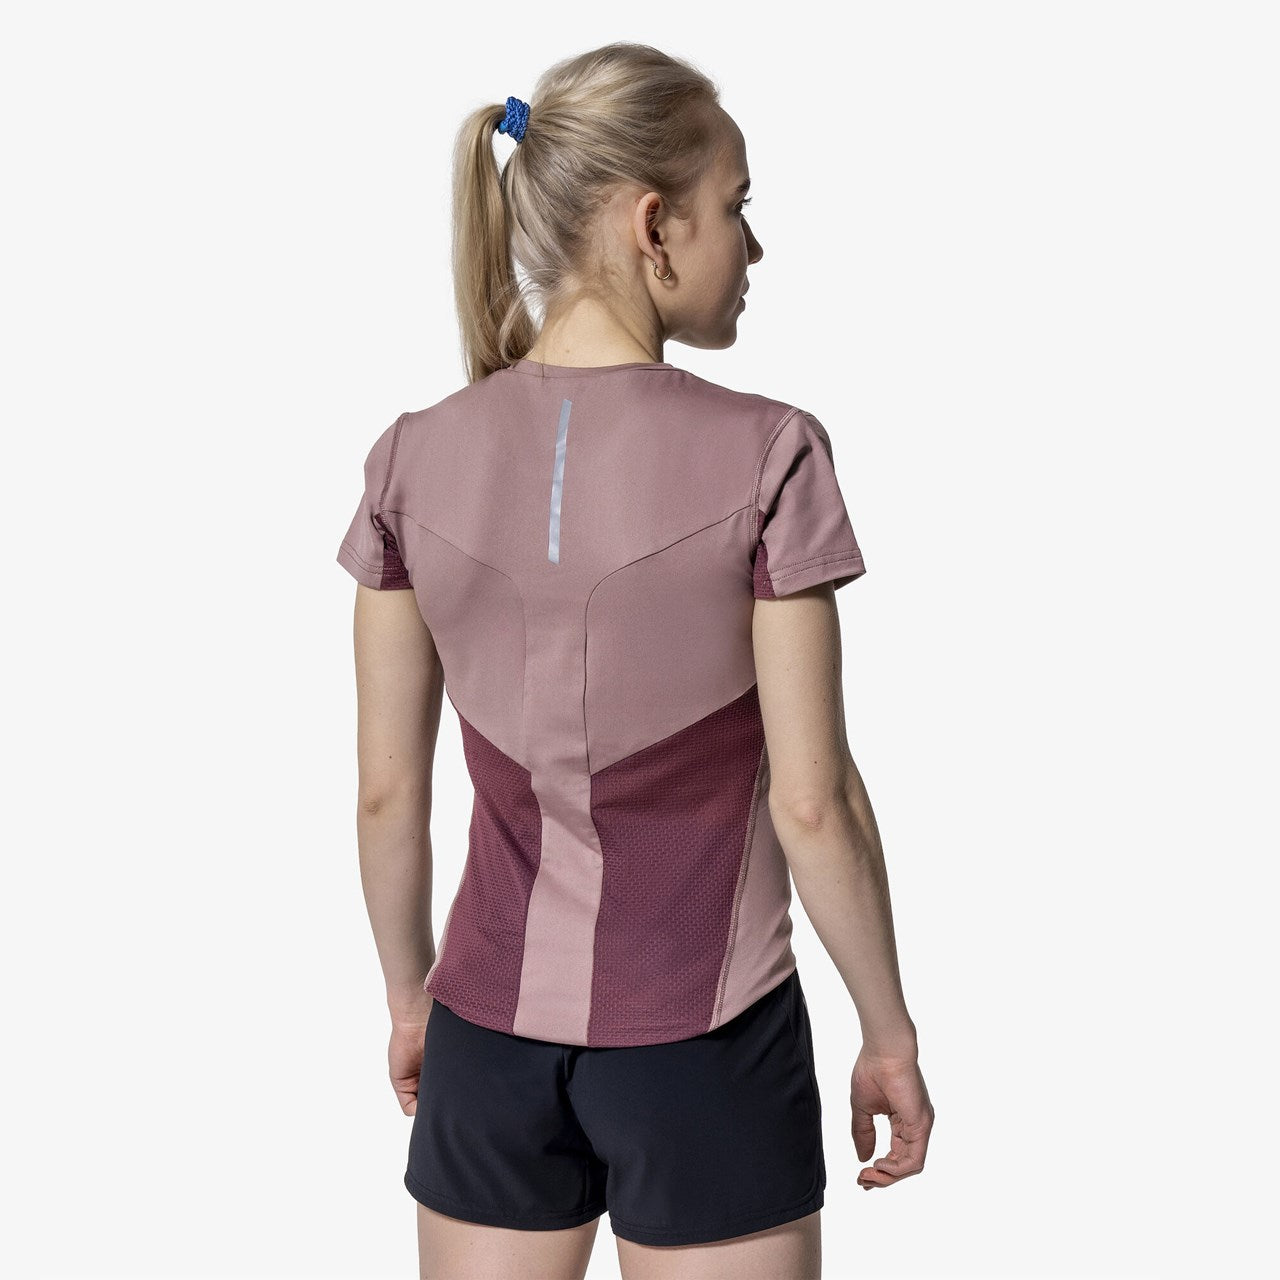 Pace - Women's Short Sleeve Top